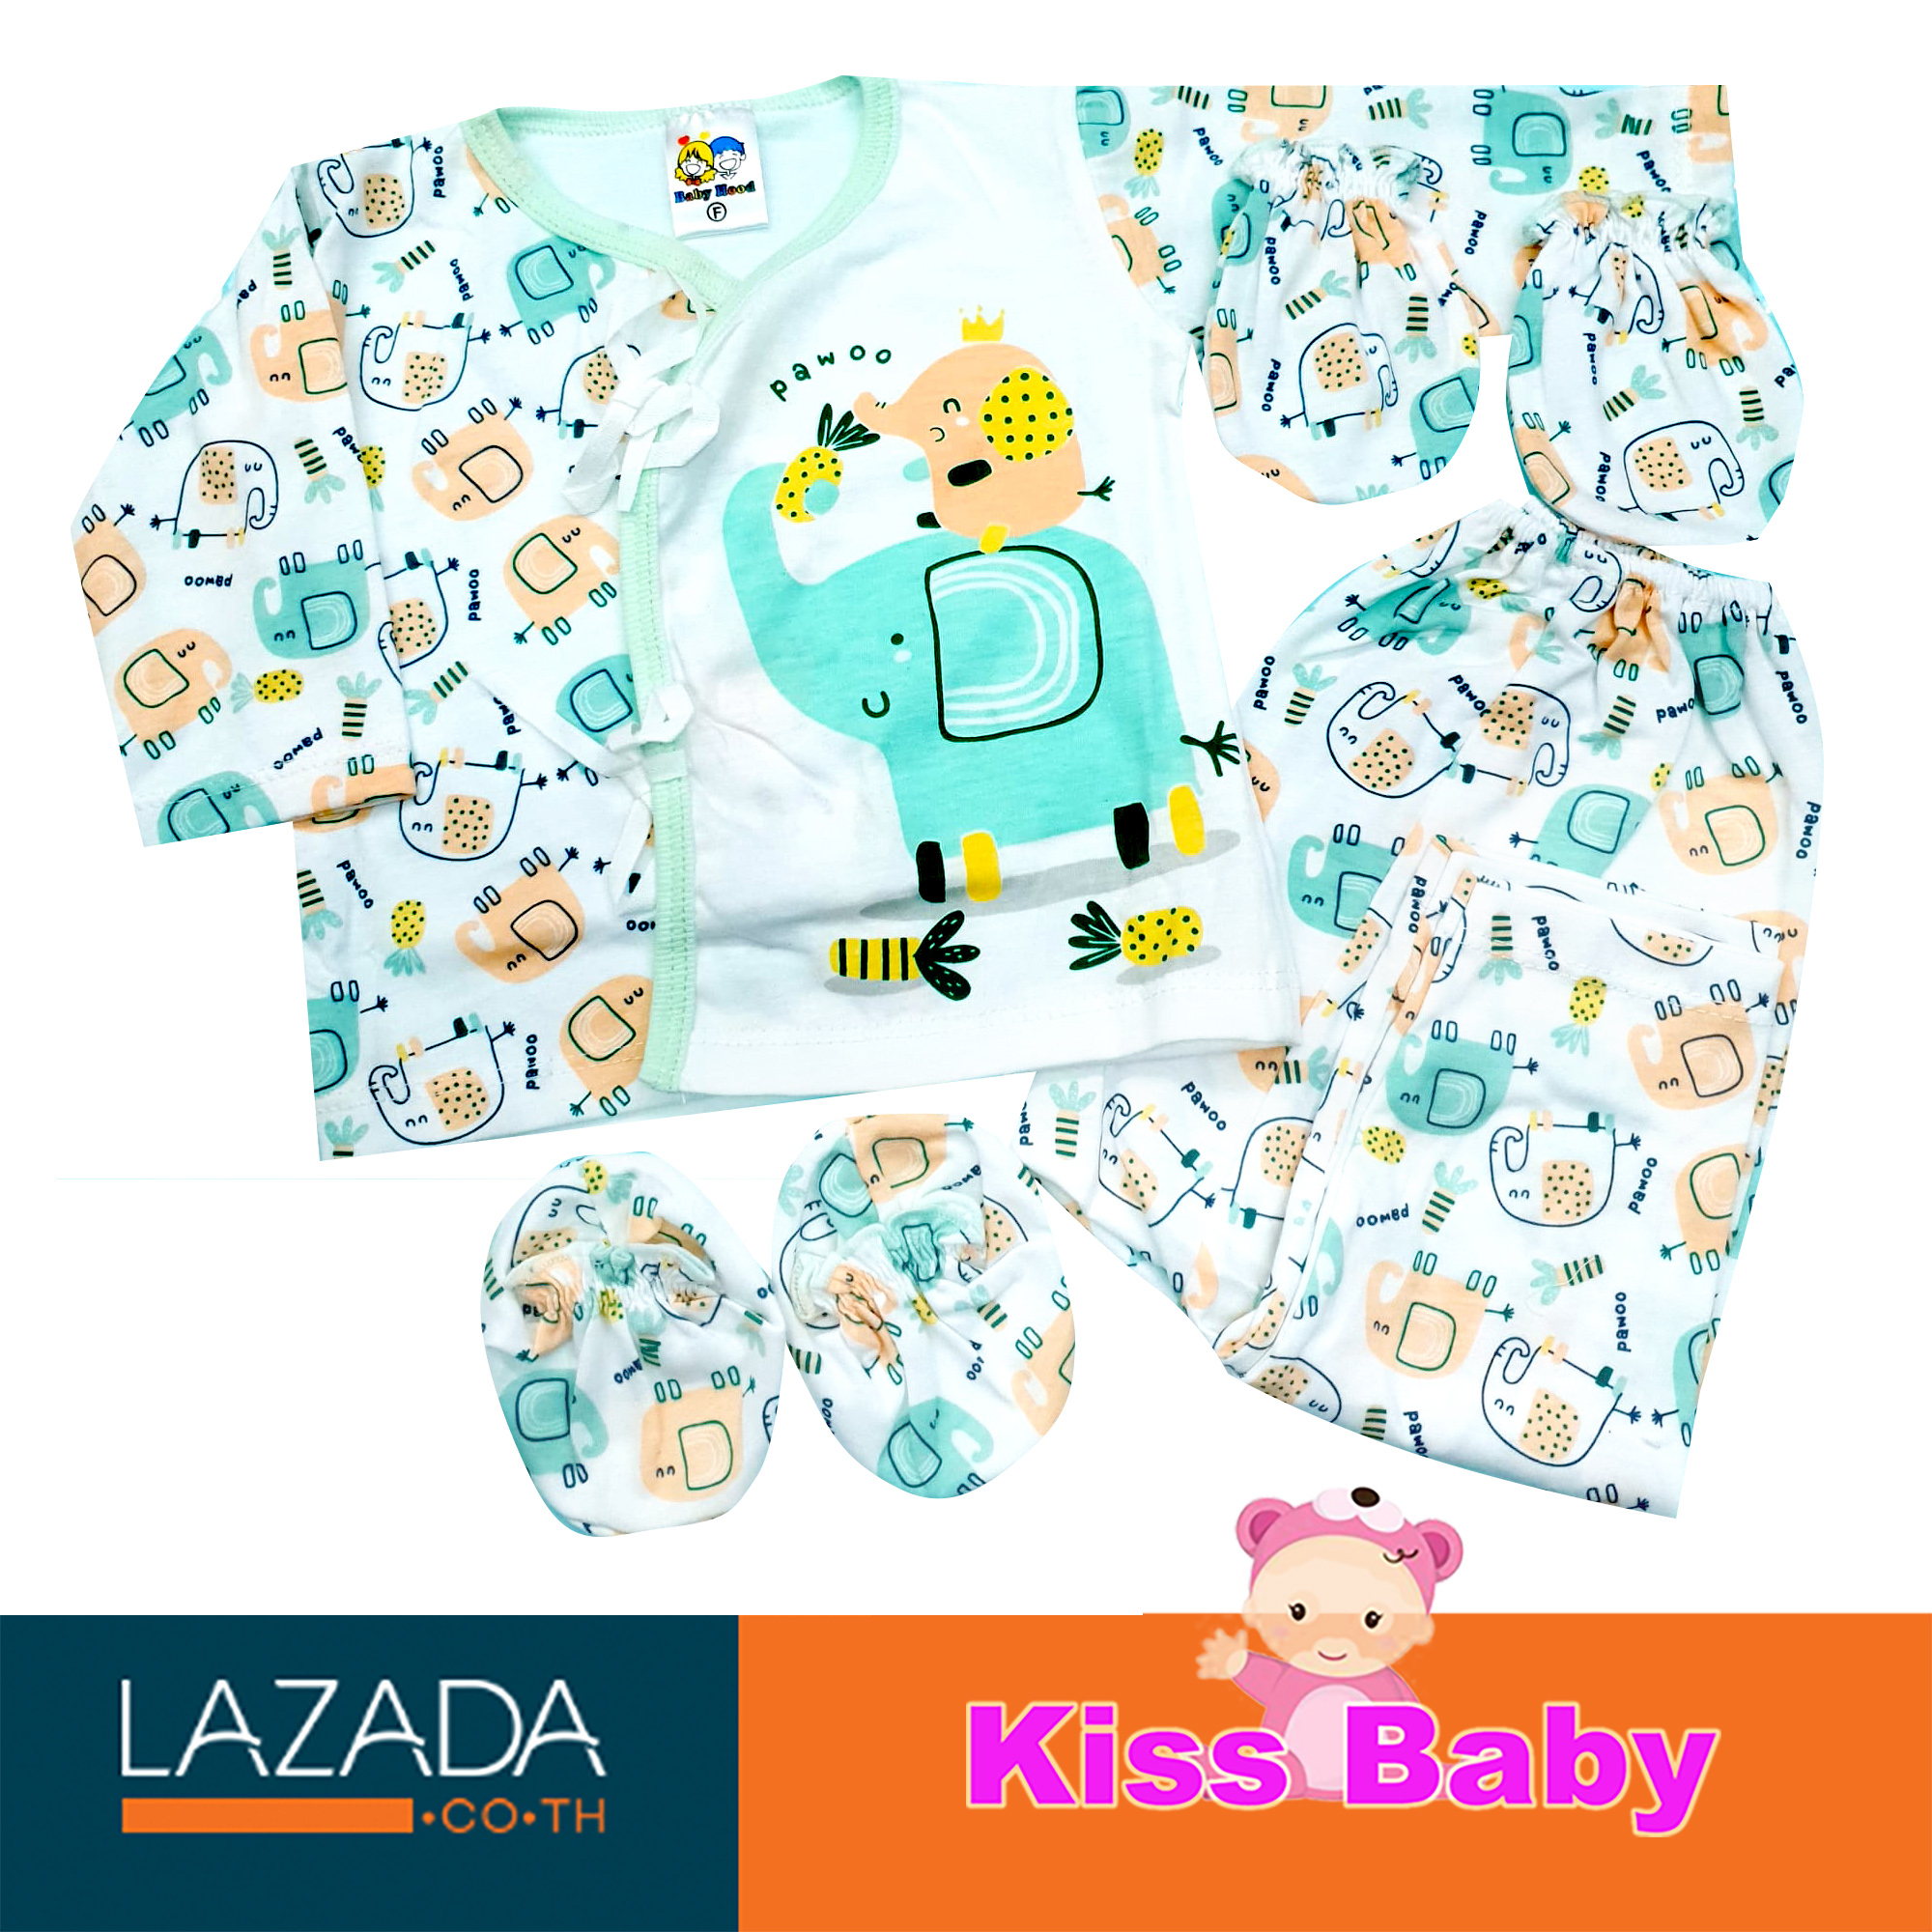 KISSBABY ชุดเซ็ต เสื้อผ้าเด็กแรกเกิด พร้อมถุงมือ ถุงเท้า สำหรับเด็กแรกเกิด - 6 เดือน ชุดแขนยาว กางเกงขายาว